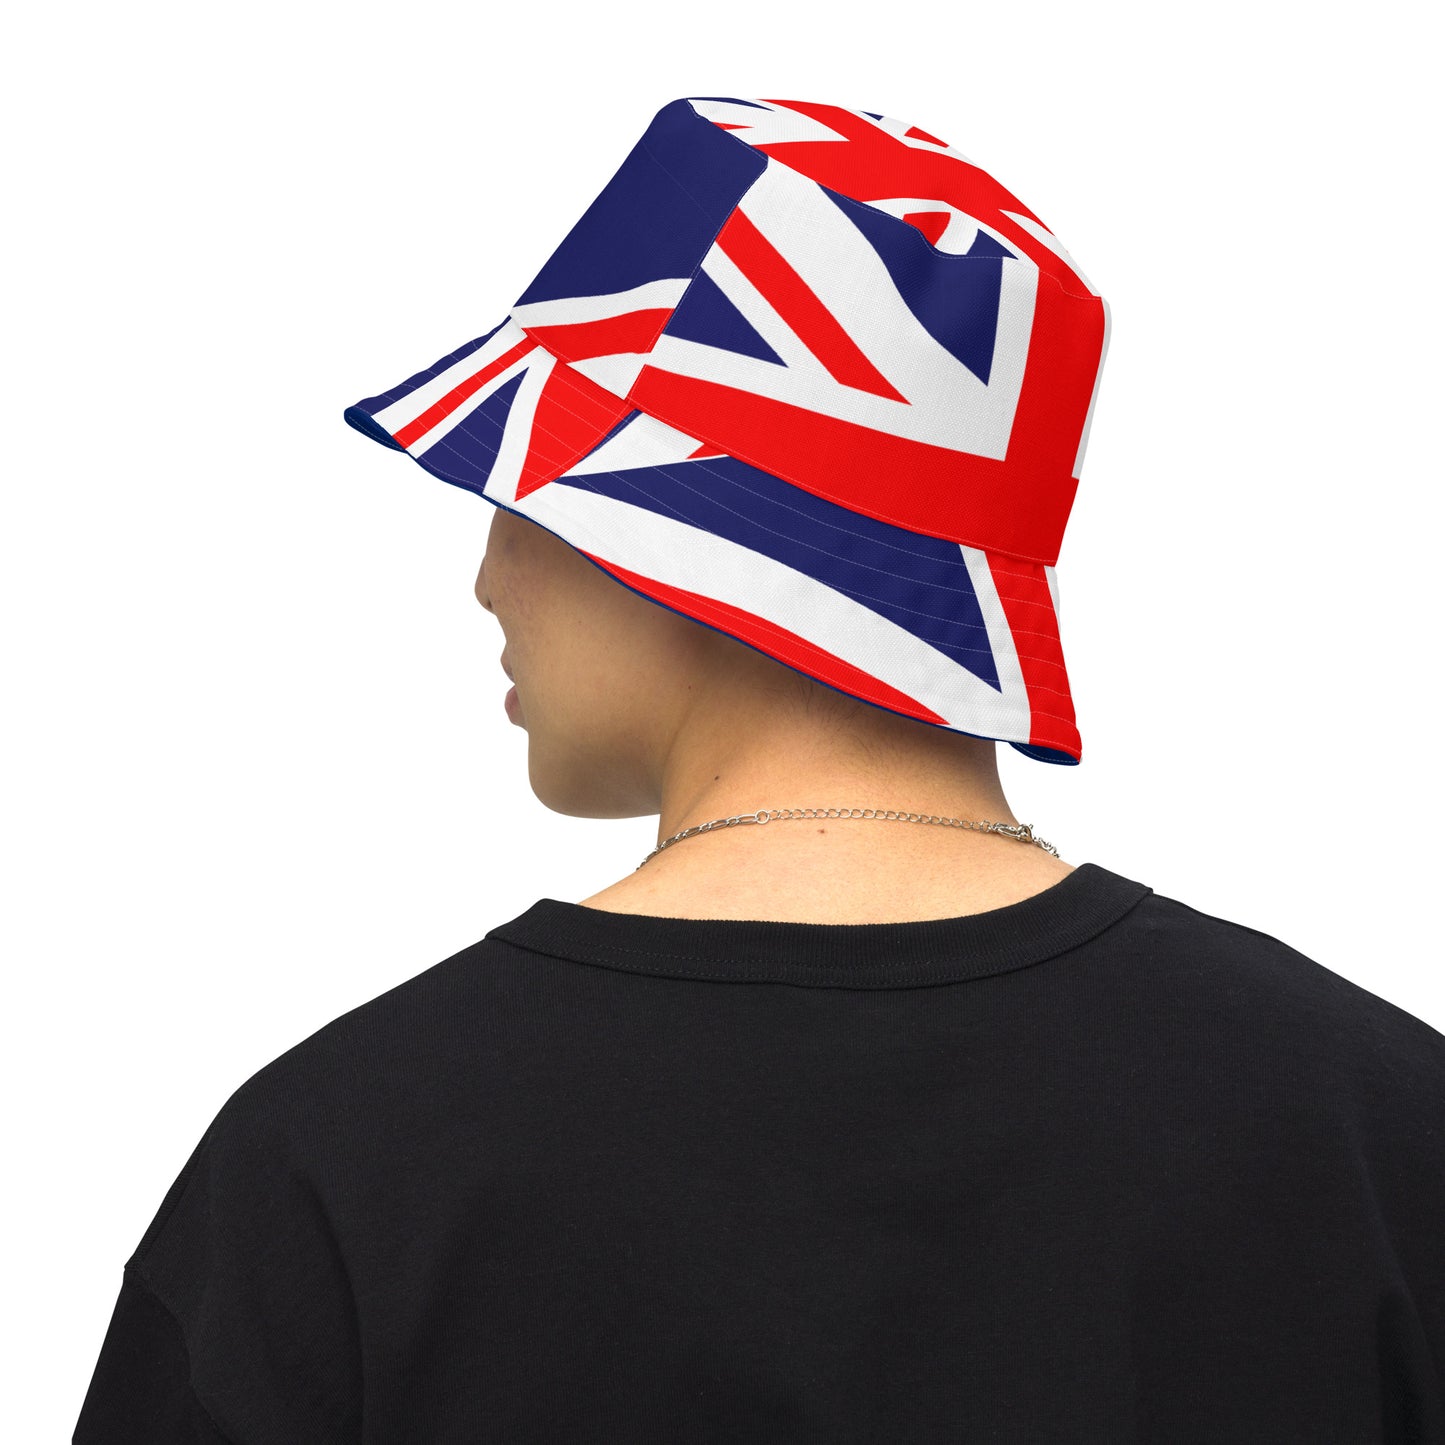 Sombrero Union Jack / Sombrero del Reino Unido / Sombrero de cubo reversible